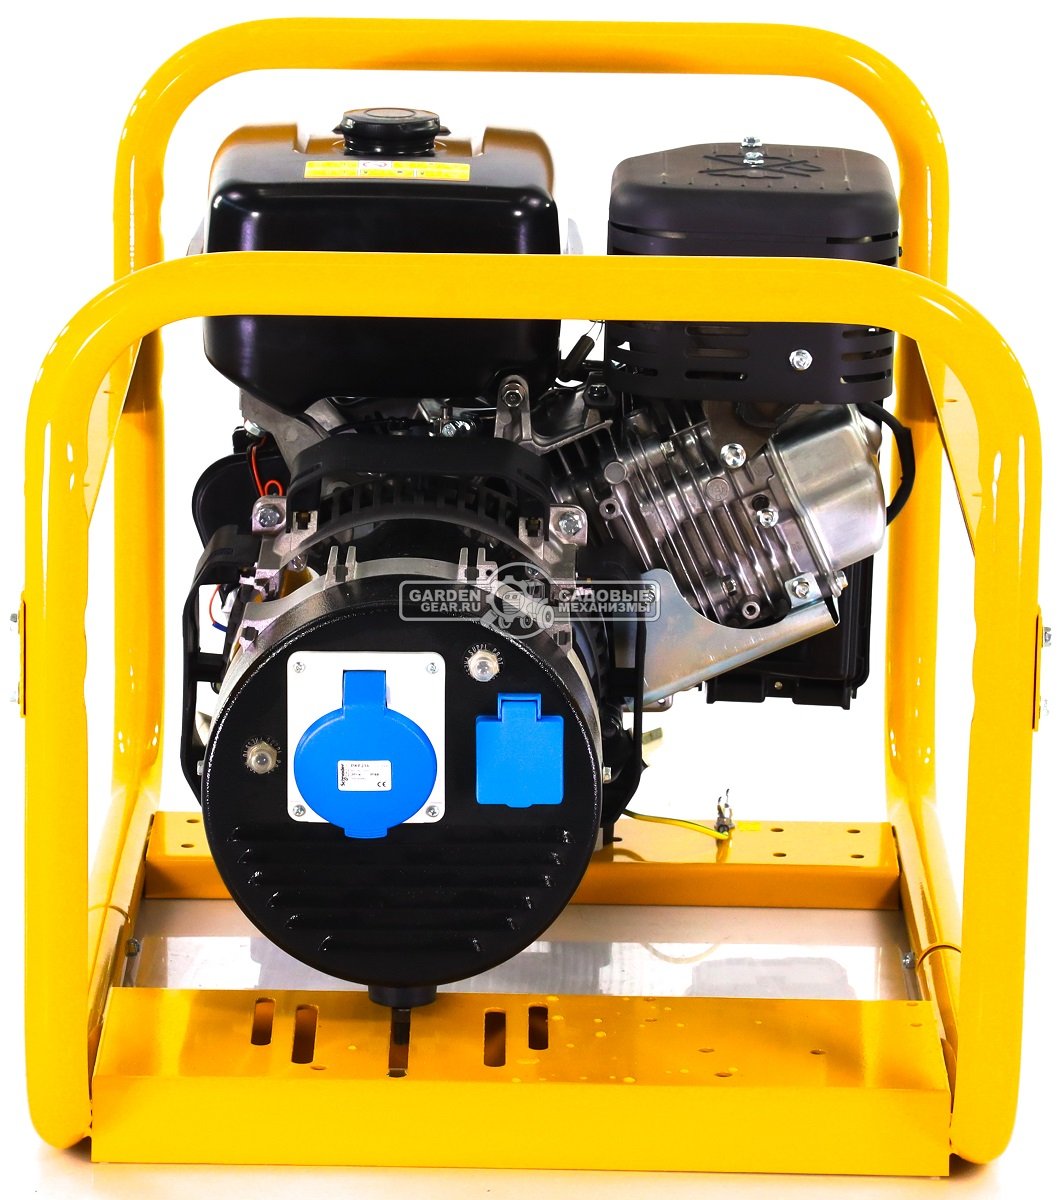 Бензиновый генератор Caiman Expert 7510X (FRA, Caiman EX40, 404 см3, 5.0/7.0 кВт, 7 л, 73 кг)